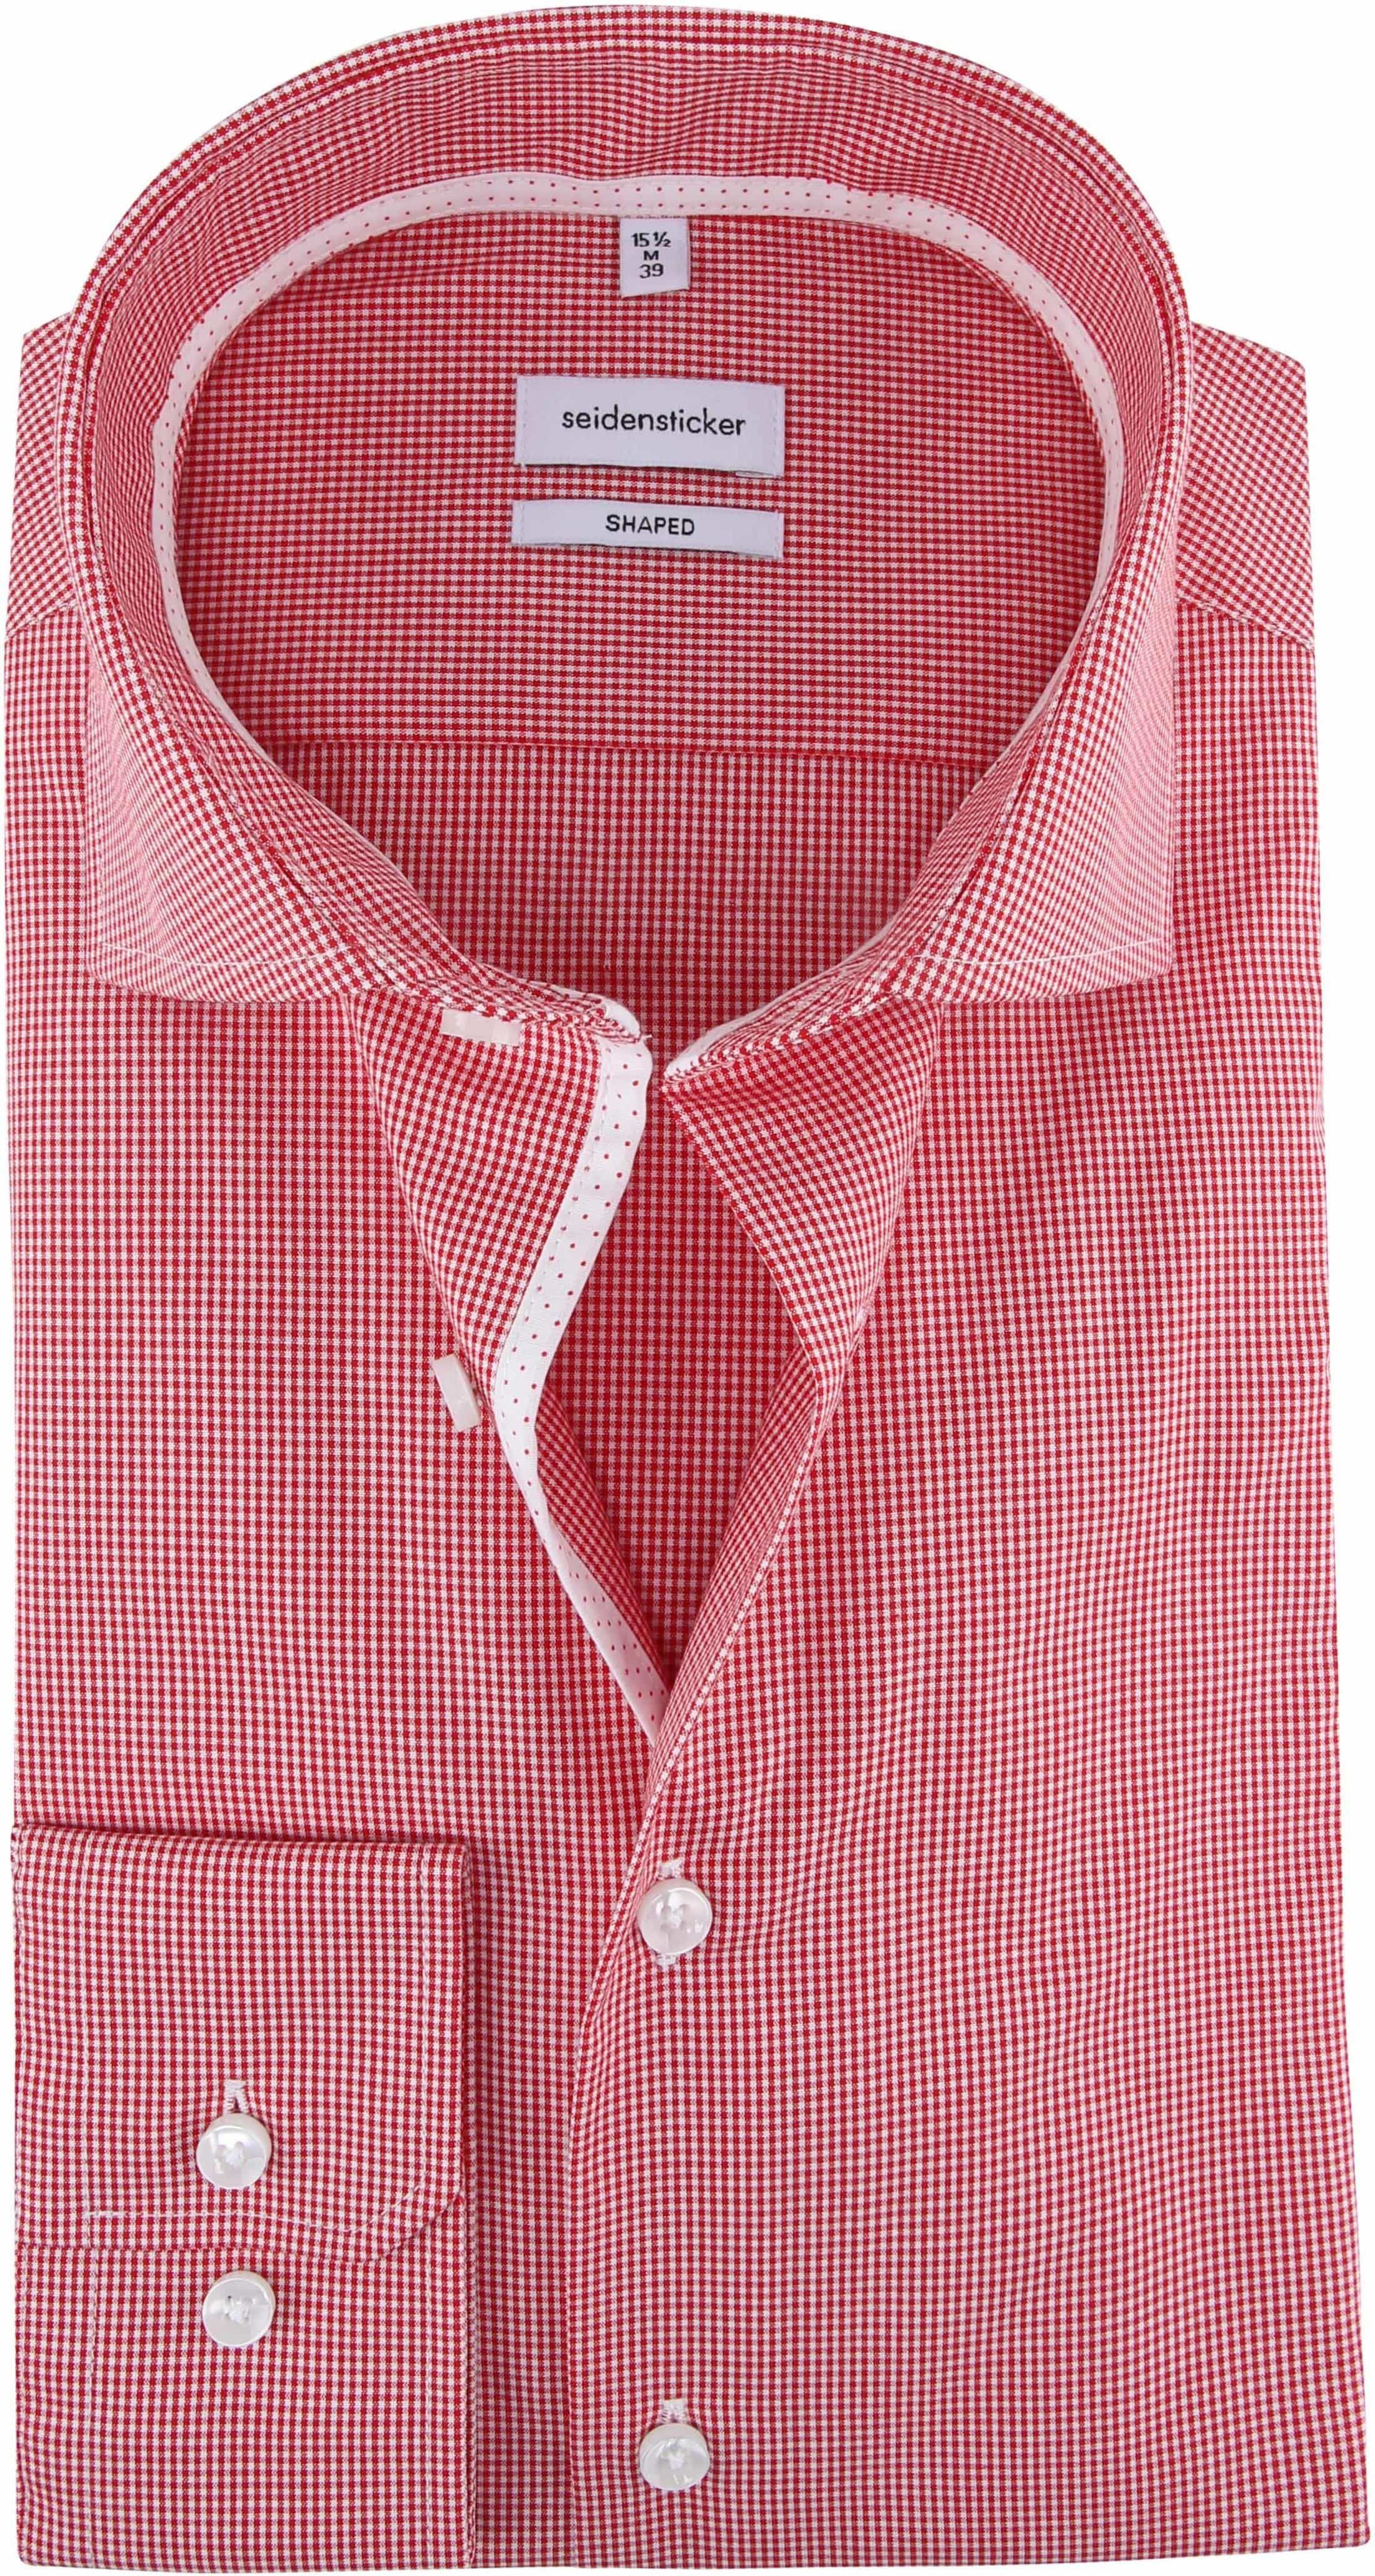 Seidensticker Shirt Checkered Red size 15